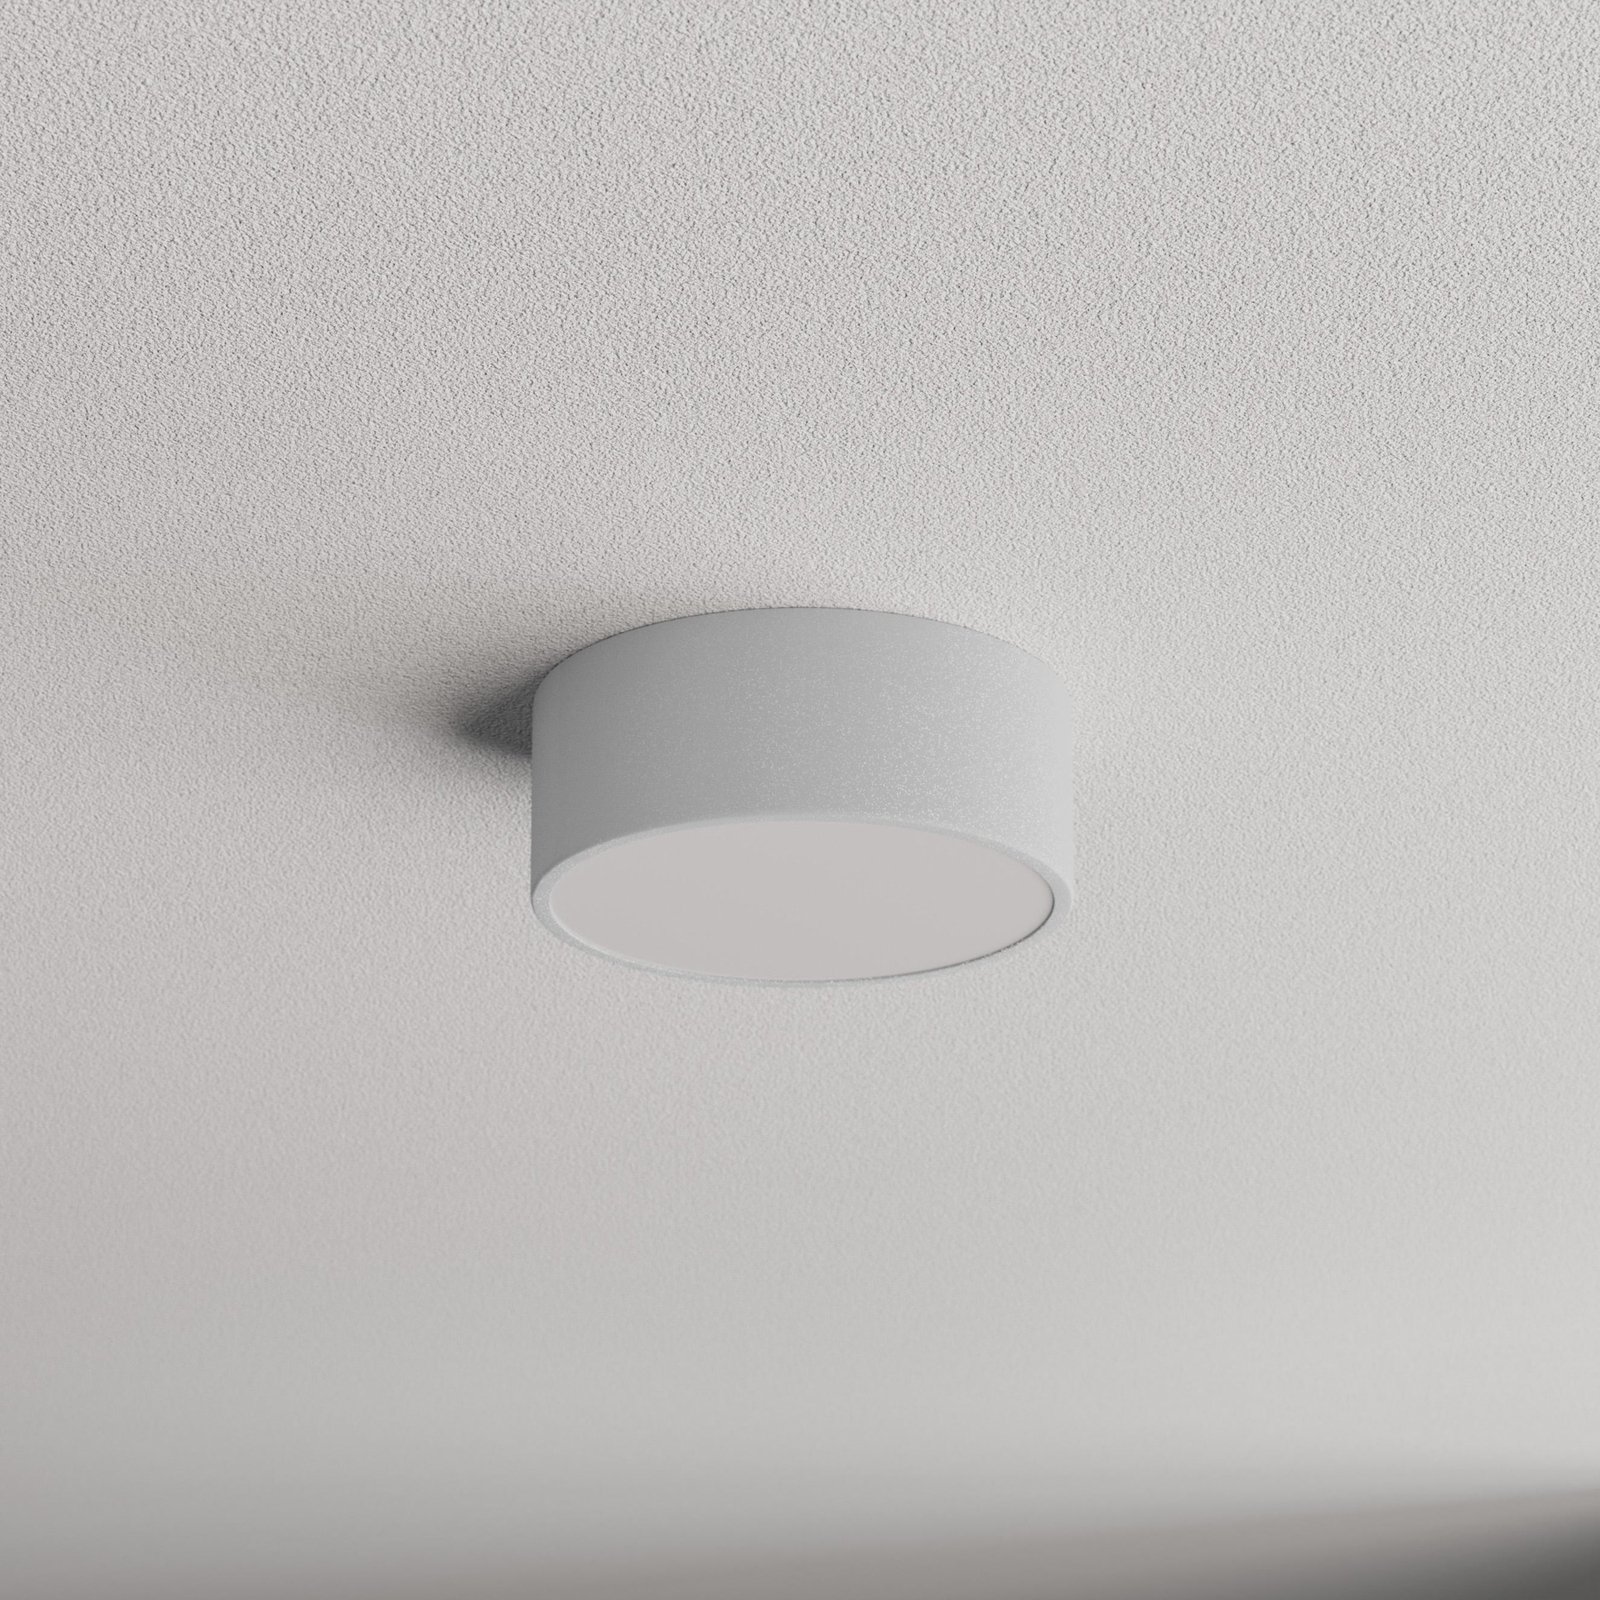 Cleo plafondlamp, grijs, Ø 20 cm, metaal, IP54